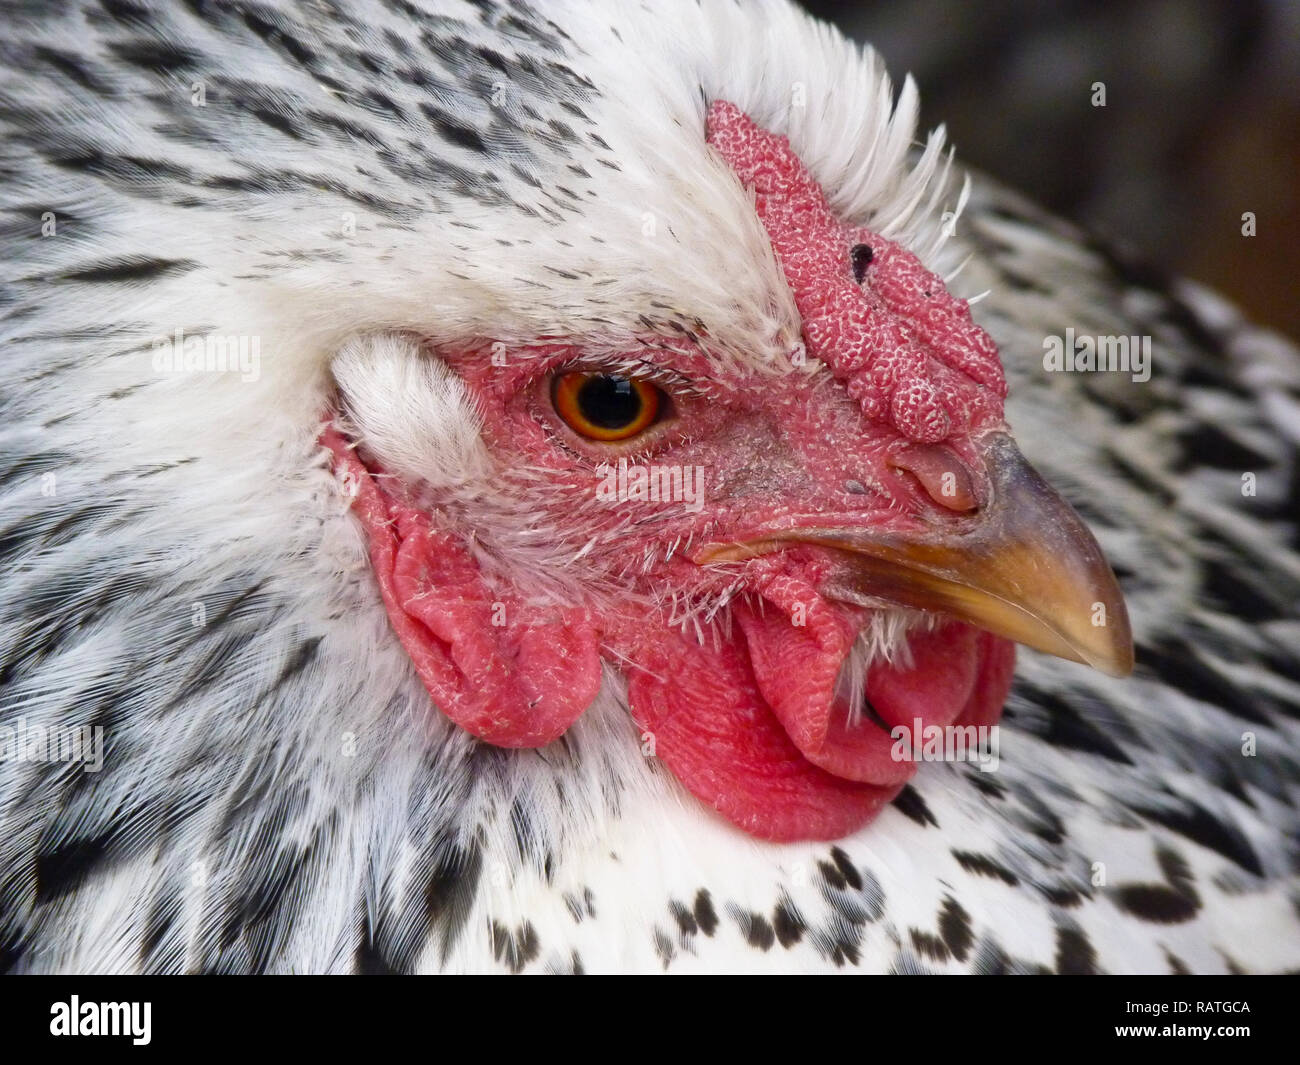 Nahaufnahme des gefiederten Gesichts eines gesunden, aus Silber geschnürten wyandotte-hühnchens, USA Stockfoto